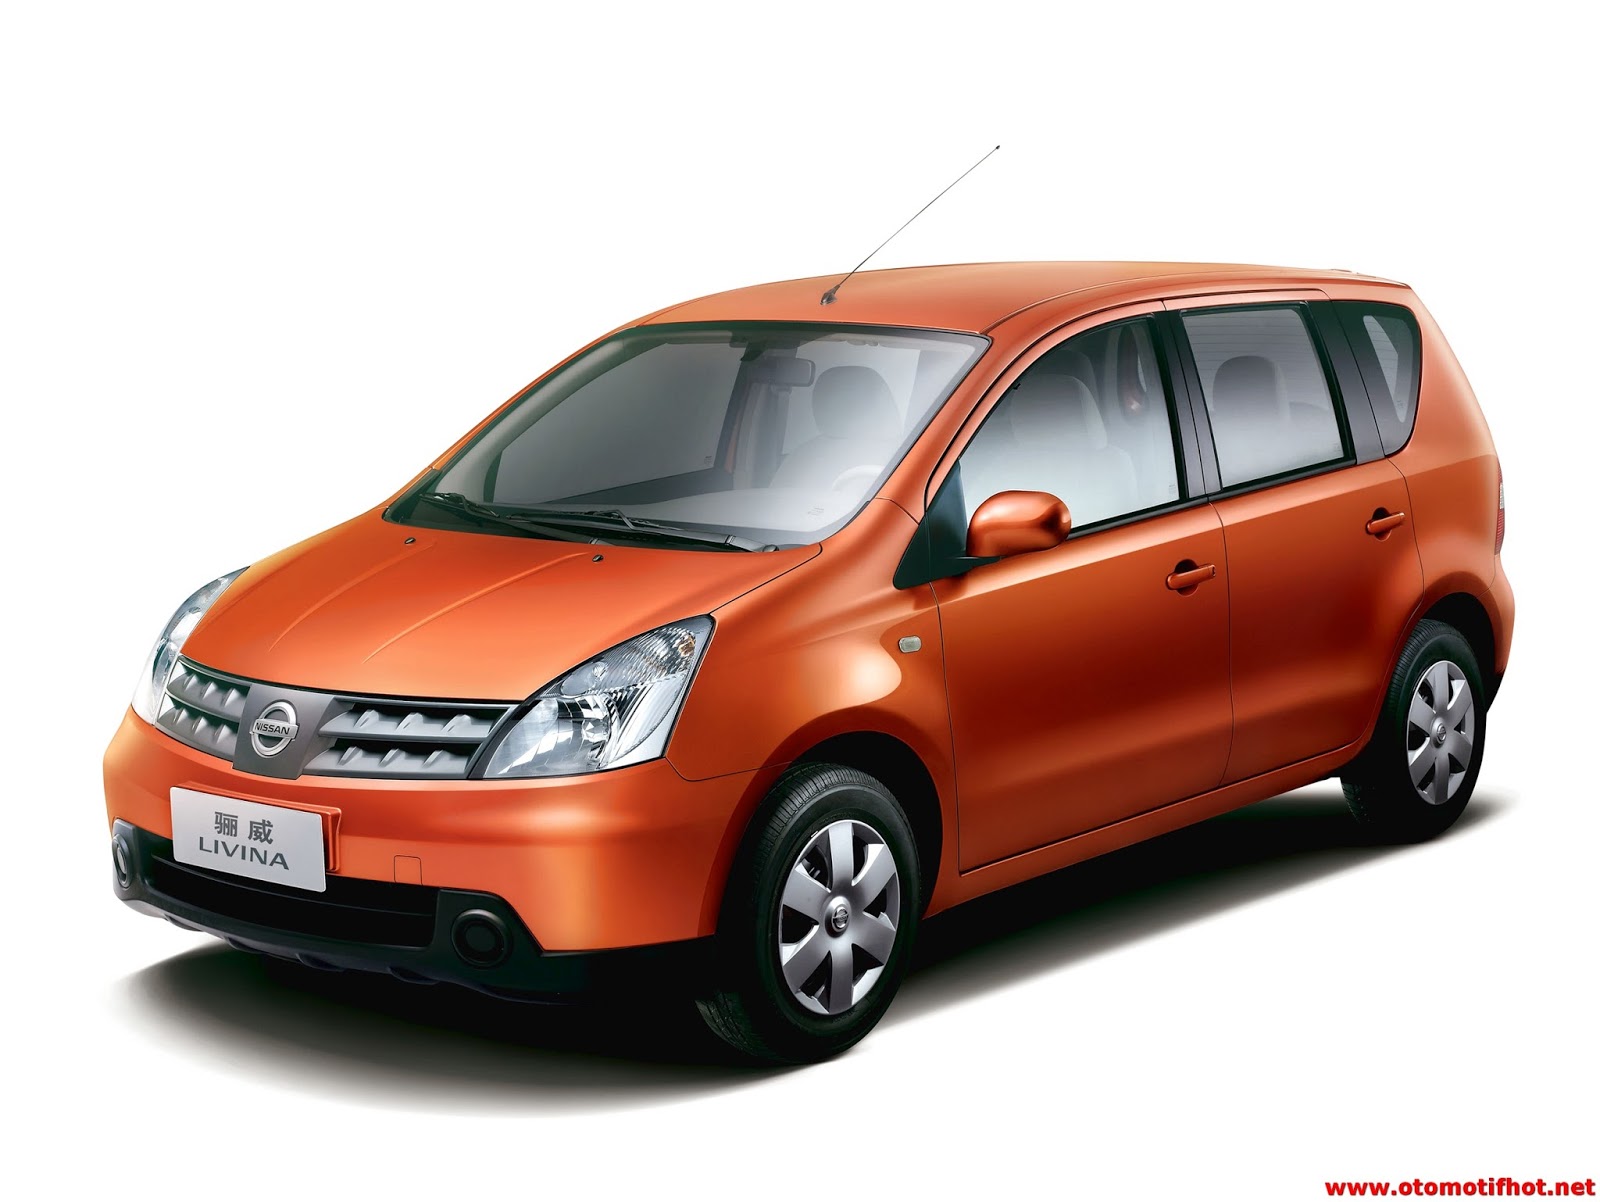 Spesifikasi Lengkap Mobil Nissan Grand Livina dan harganya